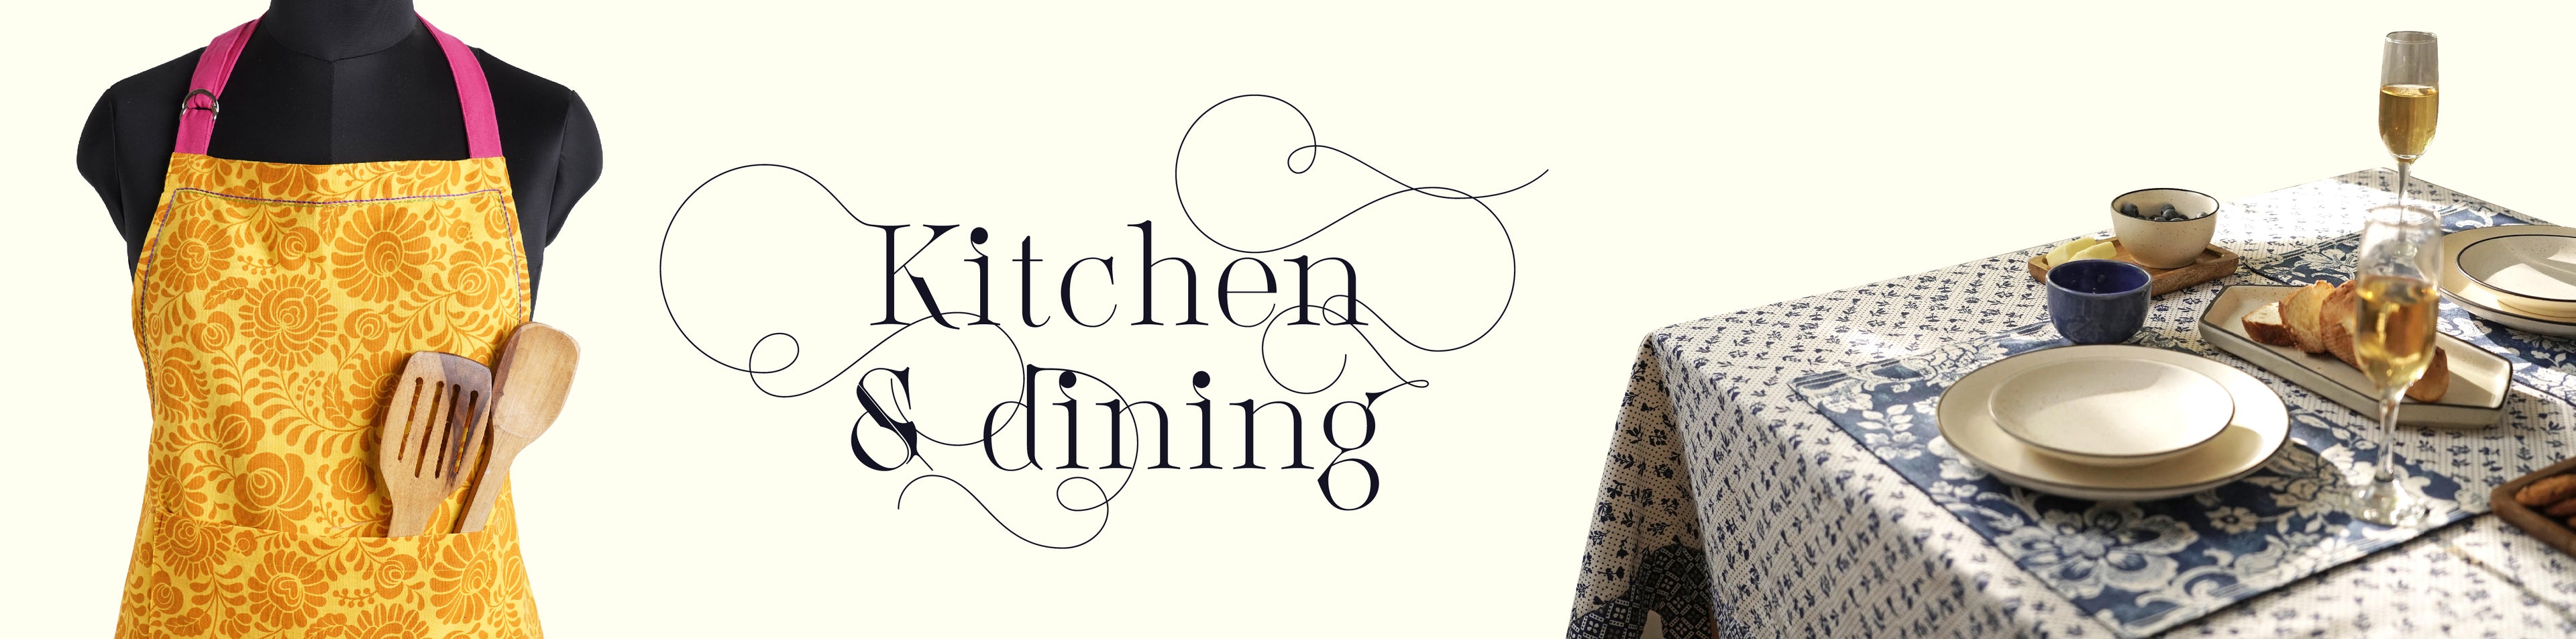 Kitchen & Dining